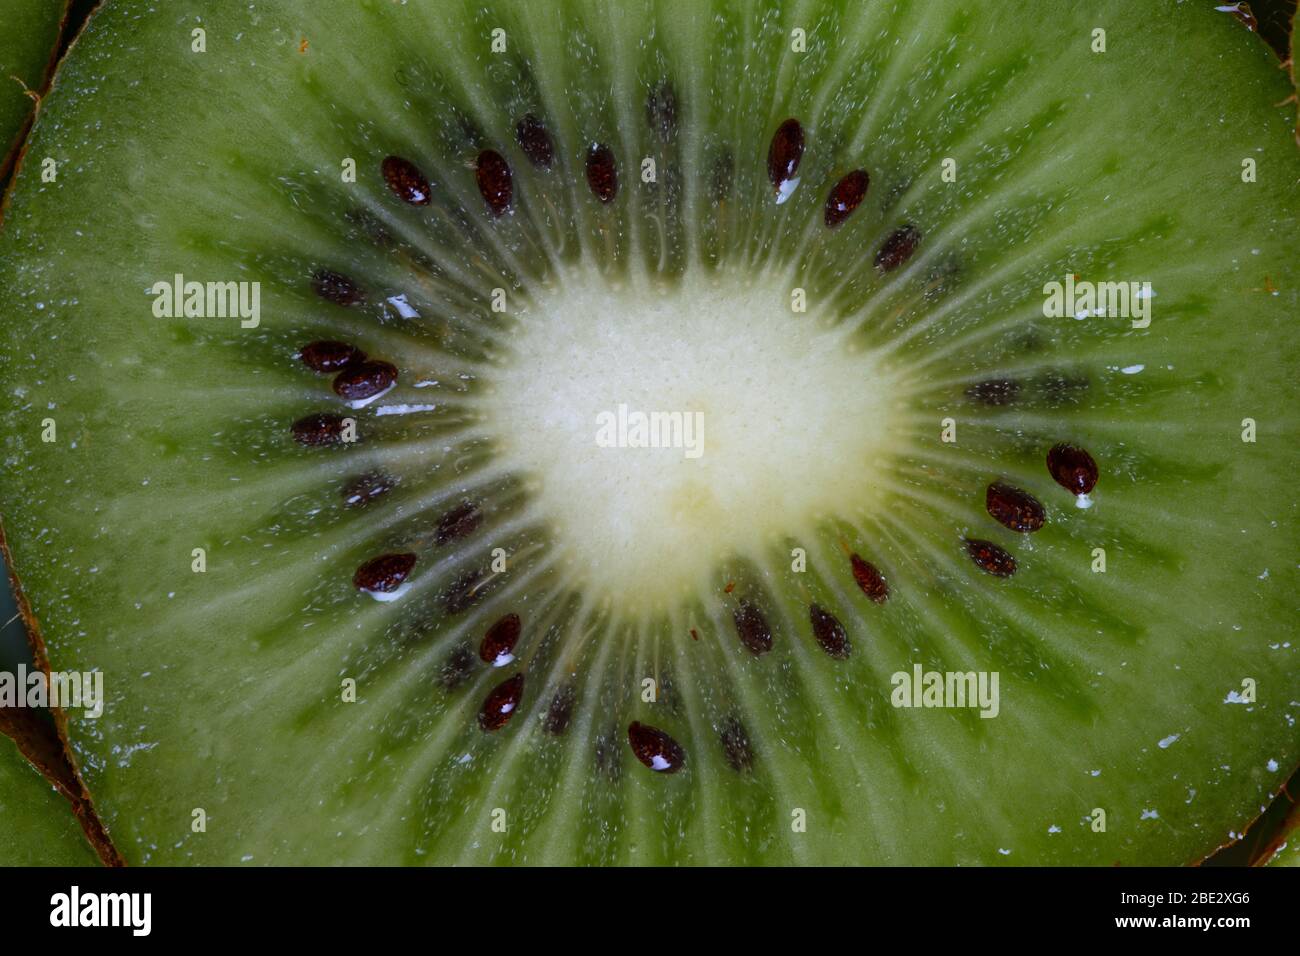 Ein fantastisches Stillleben Studio Detail Nahaufnahme Foto von einem frischen leckeren geschnittenen Kiwi Obst, topview Stockfoto